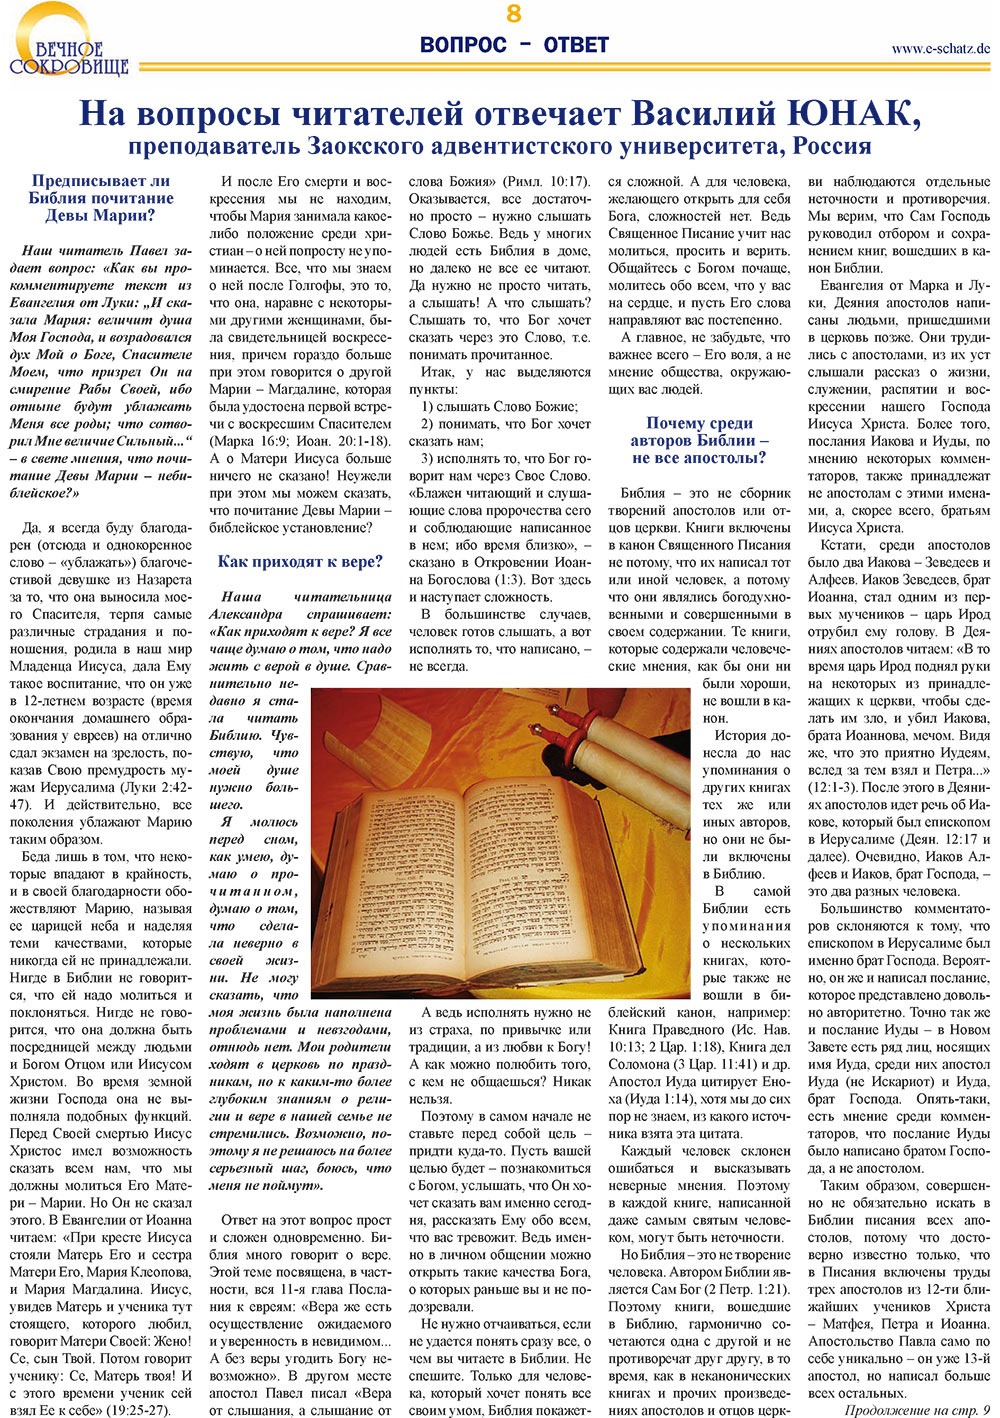 Вечное сокровище (газета). 2008 год, номер 1, стр. 8